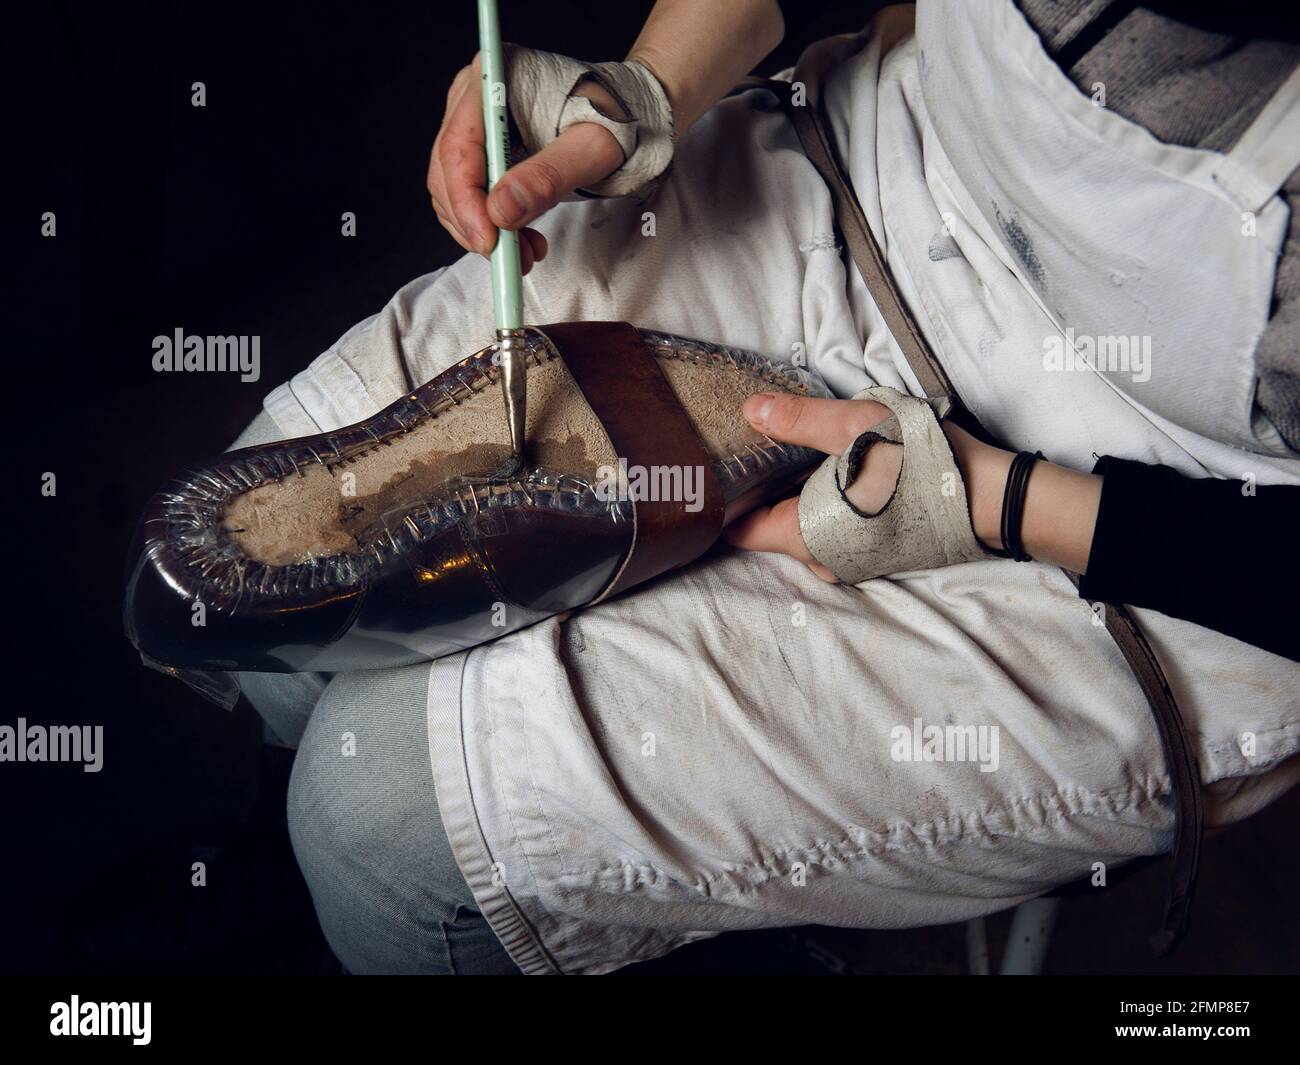 Dettaglio della produzione di calzature presso il laboratorio dell'artigiano Gabriele Gmeiner, campione del Sol, San Polo, Venezia, Veneto, Italia, Europa Foto Stock